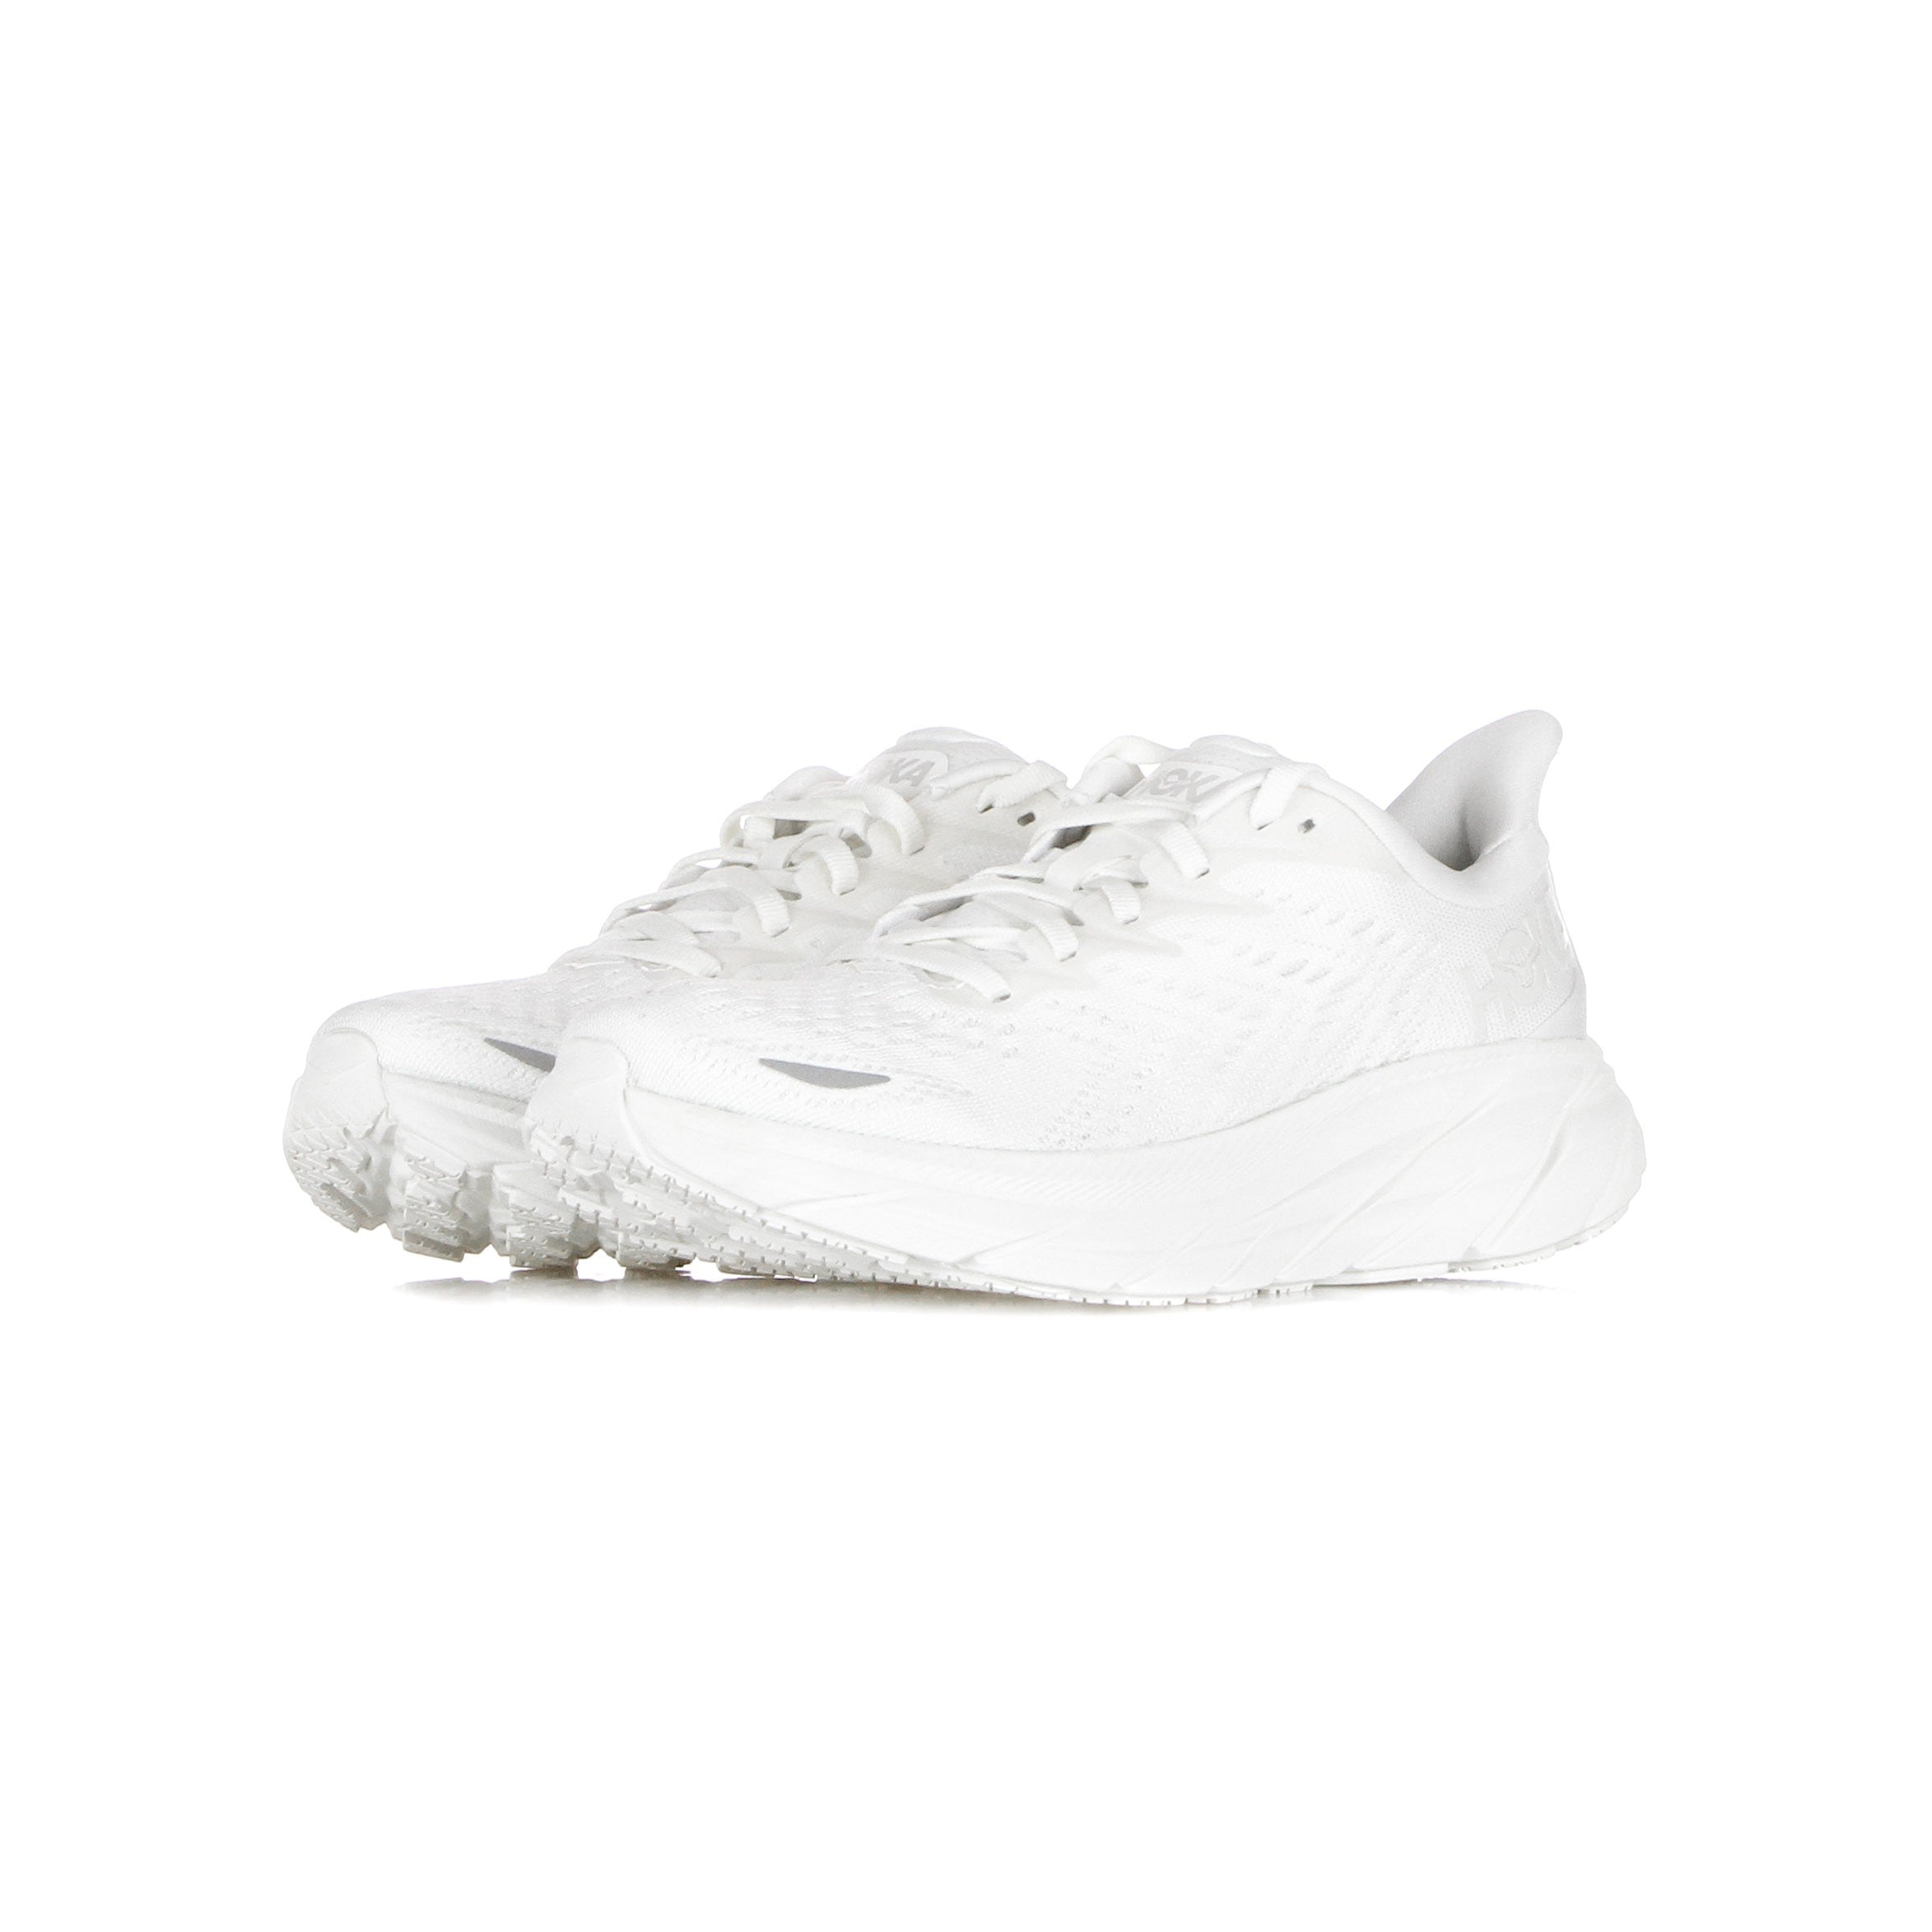 Clifton 8 White/white Women's Outdoor Shoe